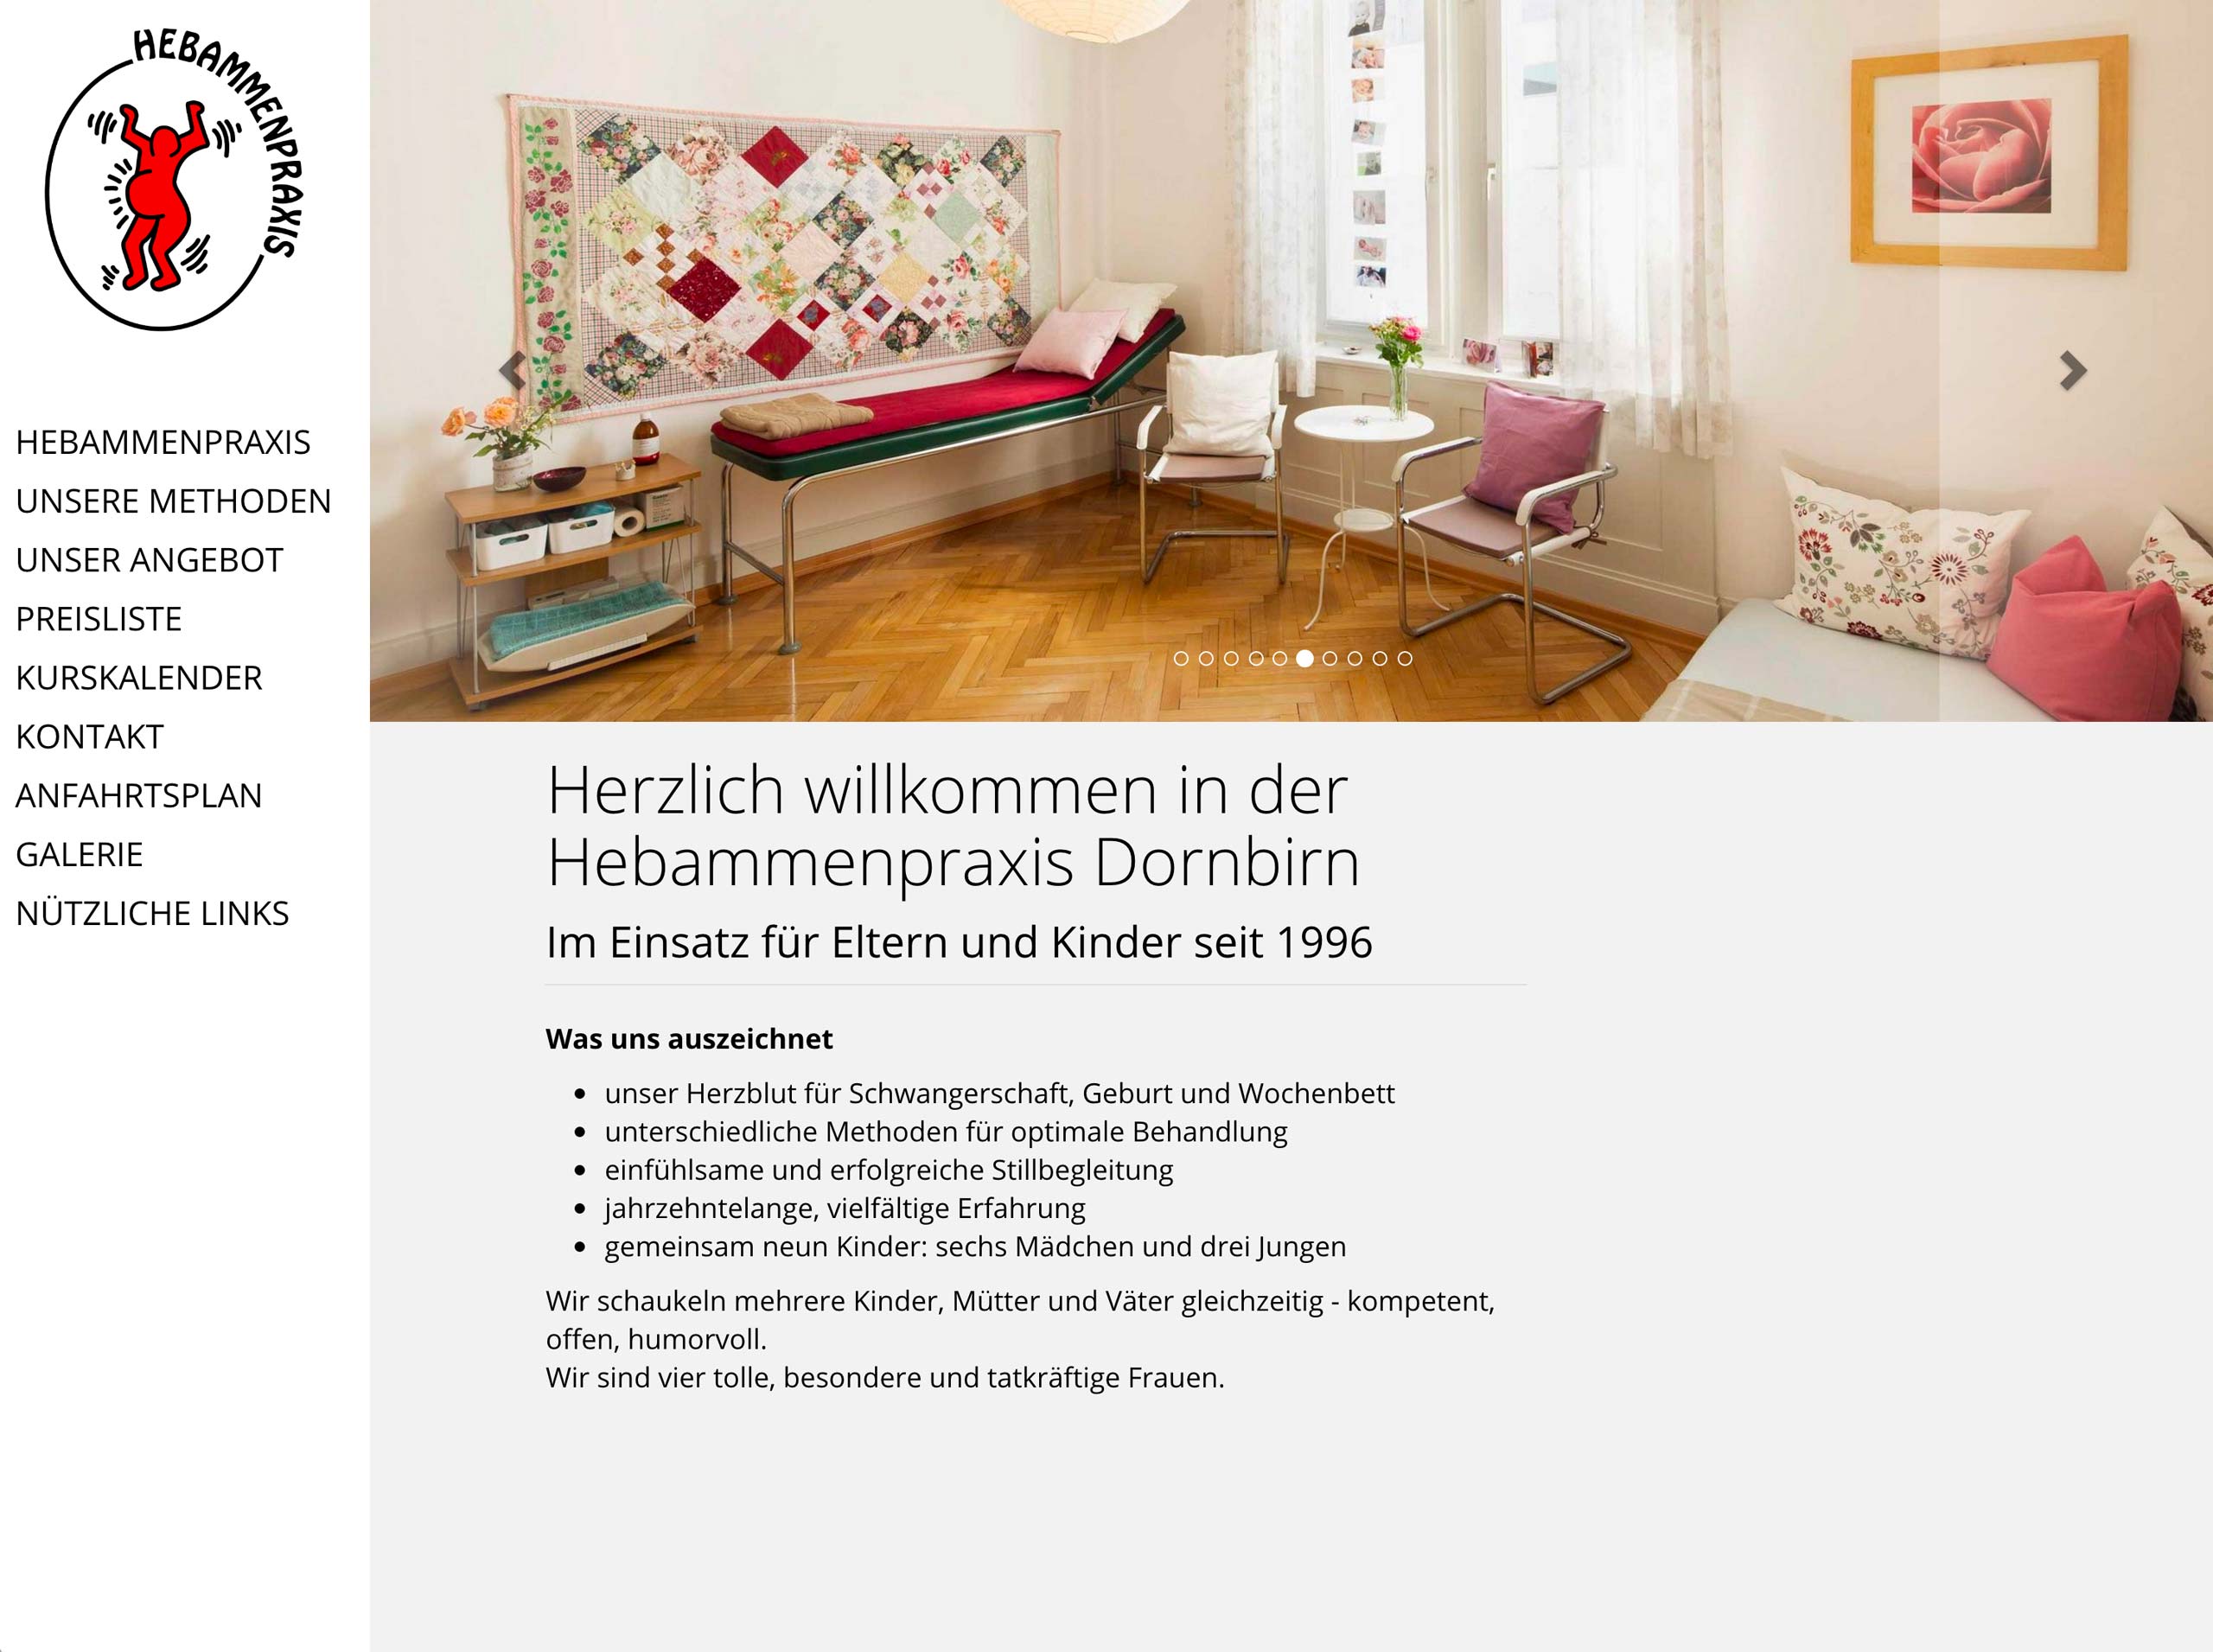 Die neue Website der Hebammenpraxis Dornbirn